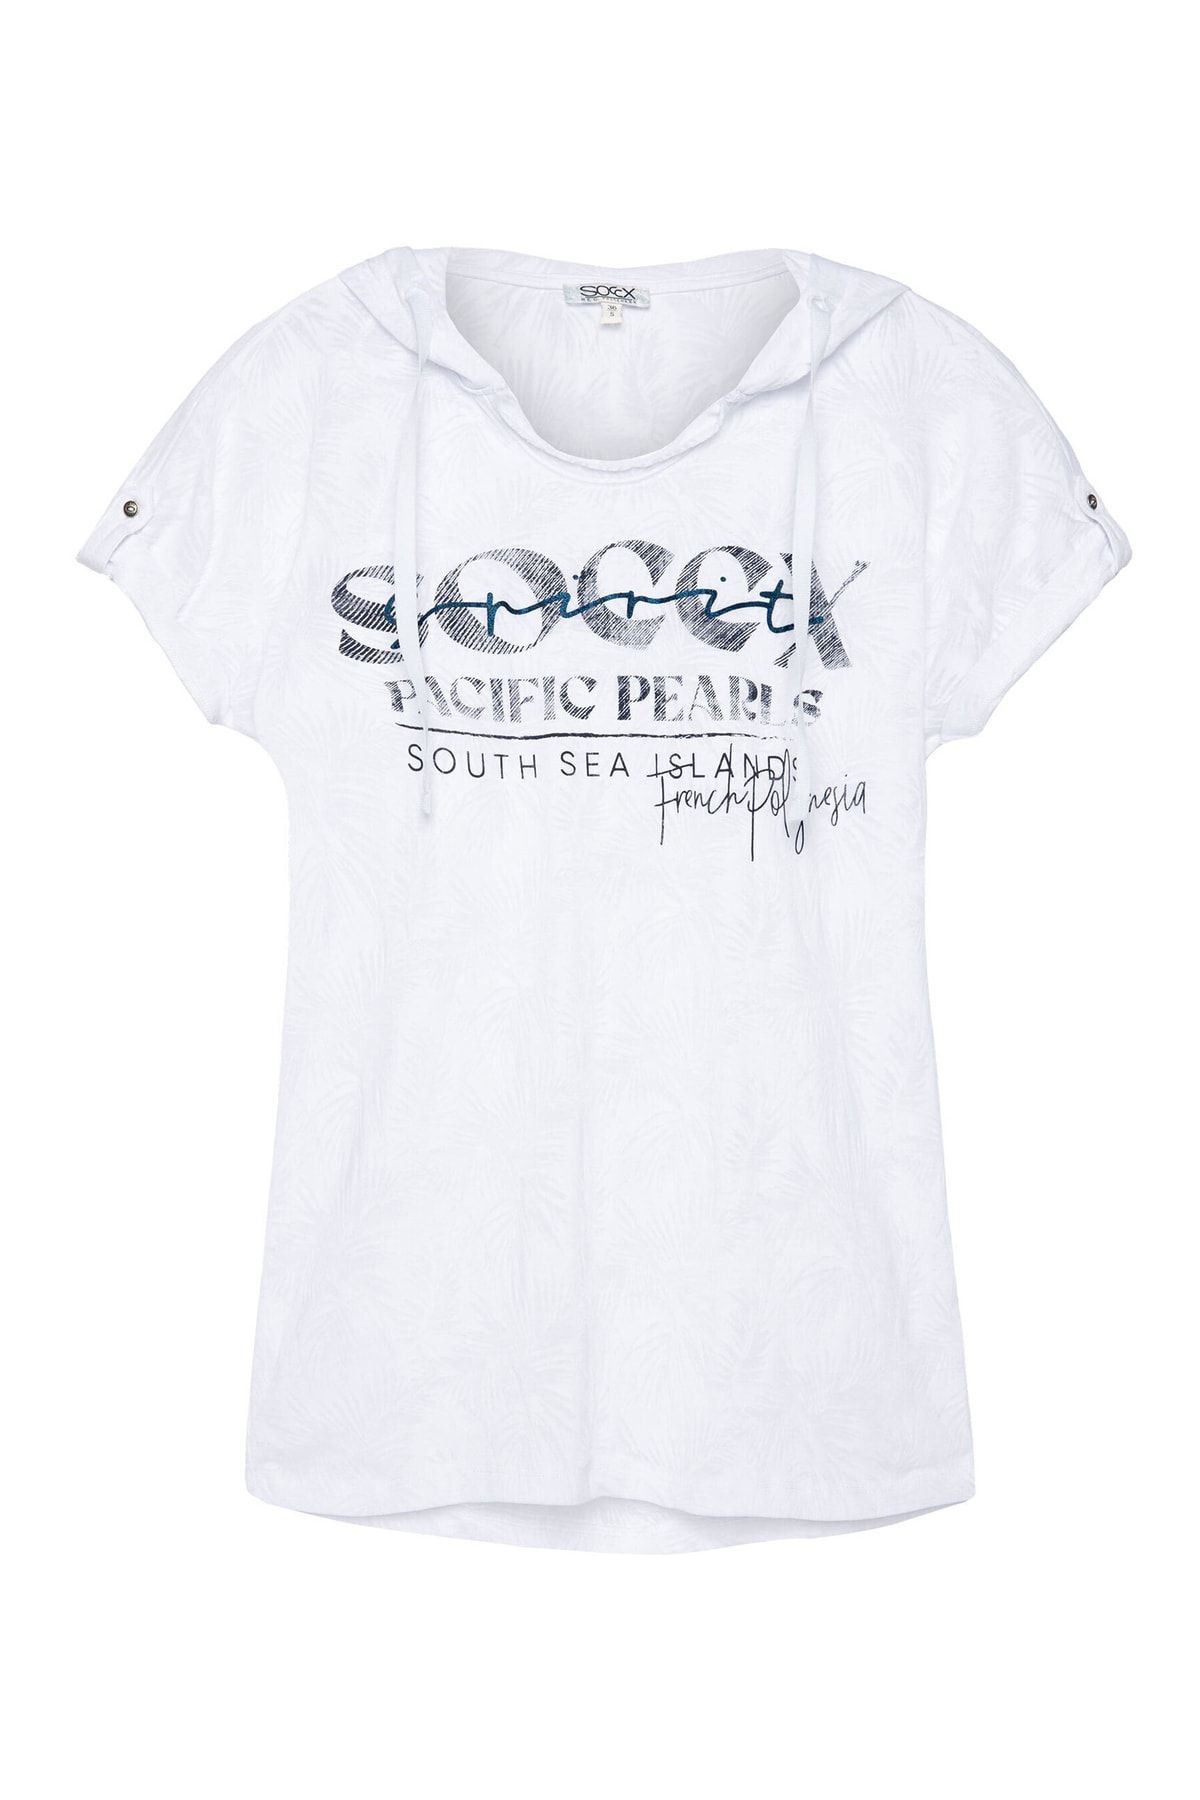 Soccx Shirt Unifarbenes - Rundhalsausschnitt lockerer Passform Kapuzenshirt in Ausbrenner-Artwork Trendyol mit und